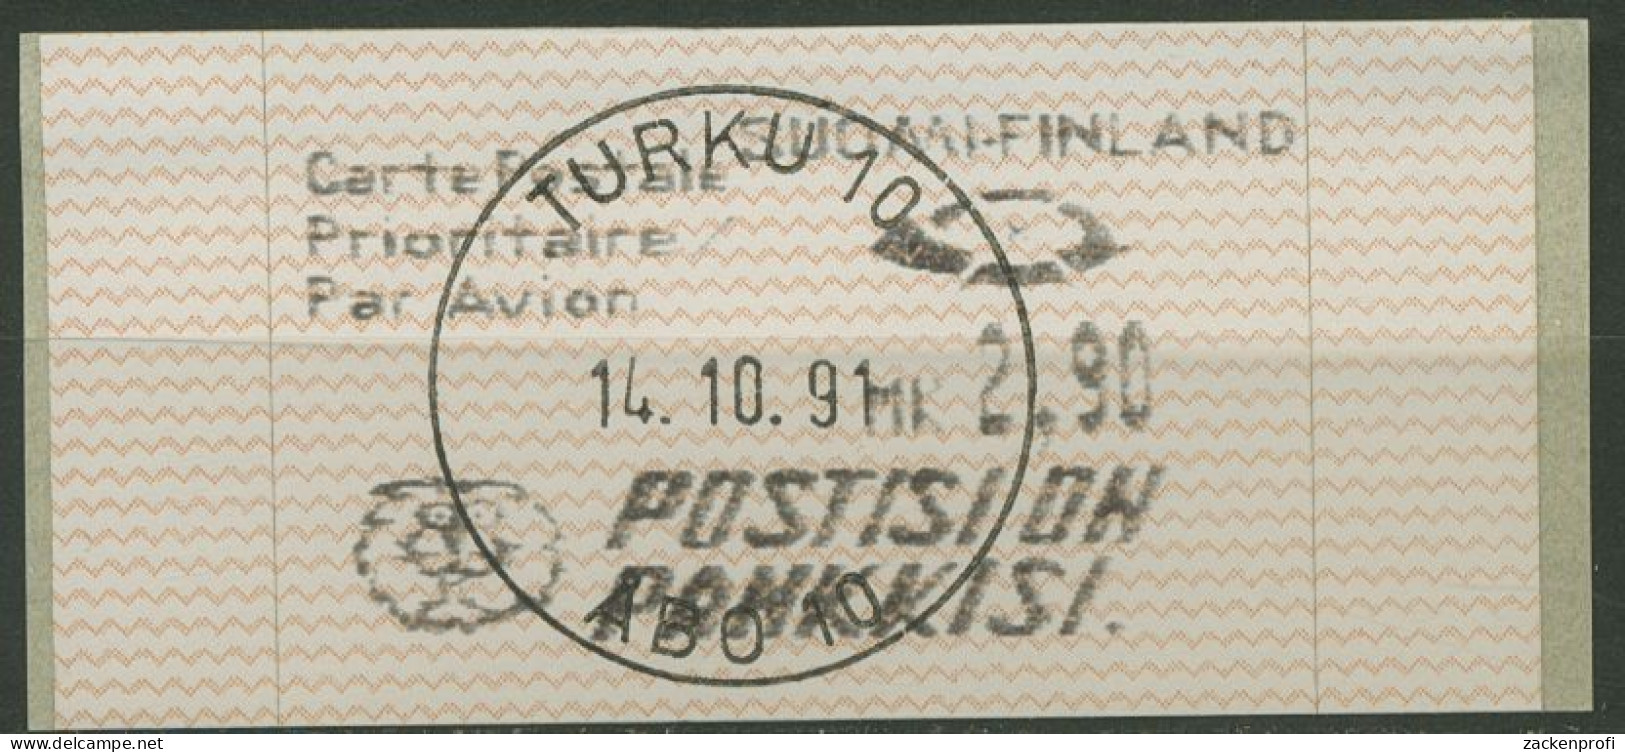 Finnland Automatenmarken 1991 2,90 MK Einzelwert, ATM 10.2 Z 3 Gestempelt - Automatenmarken [ATM]